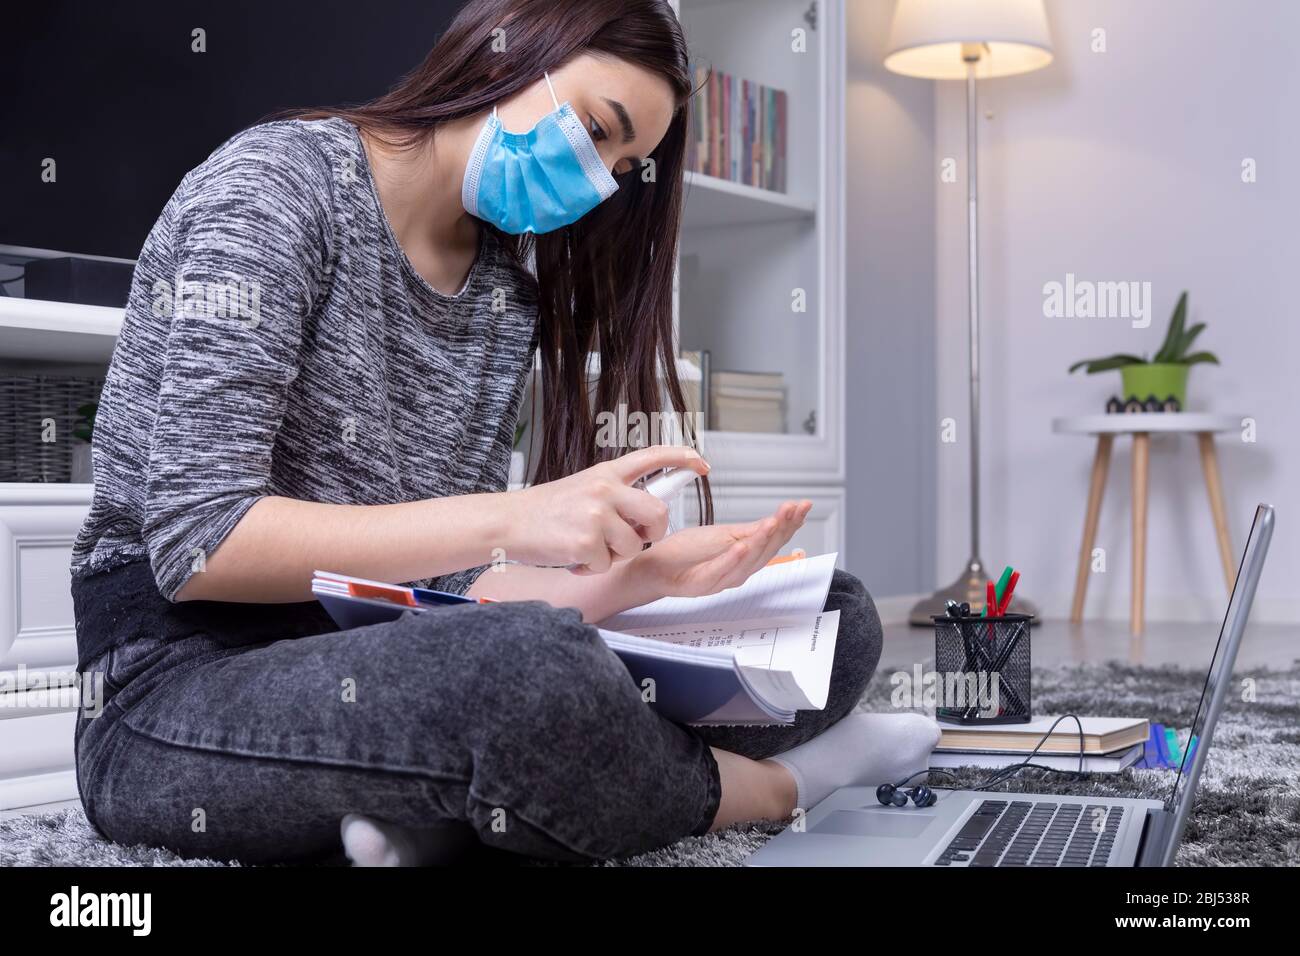 Niña de la escuela secundaria con máscara en la cara usando desinfectante antes de hacer su tarea. Educación en línea durante la pandemia del coronavirus. Foto de stock